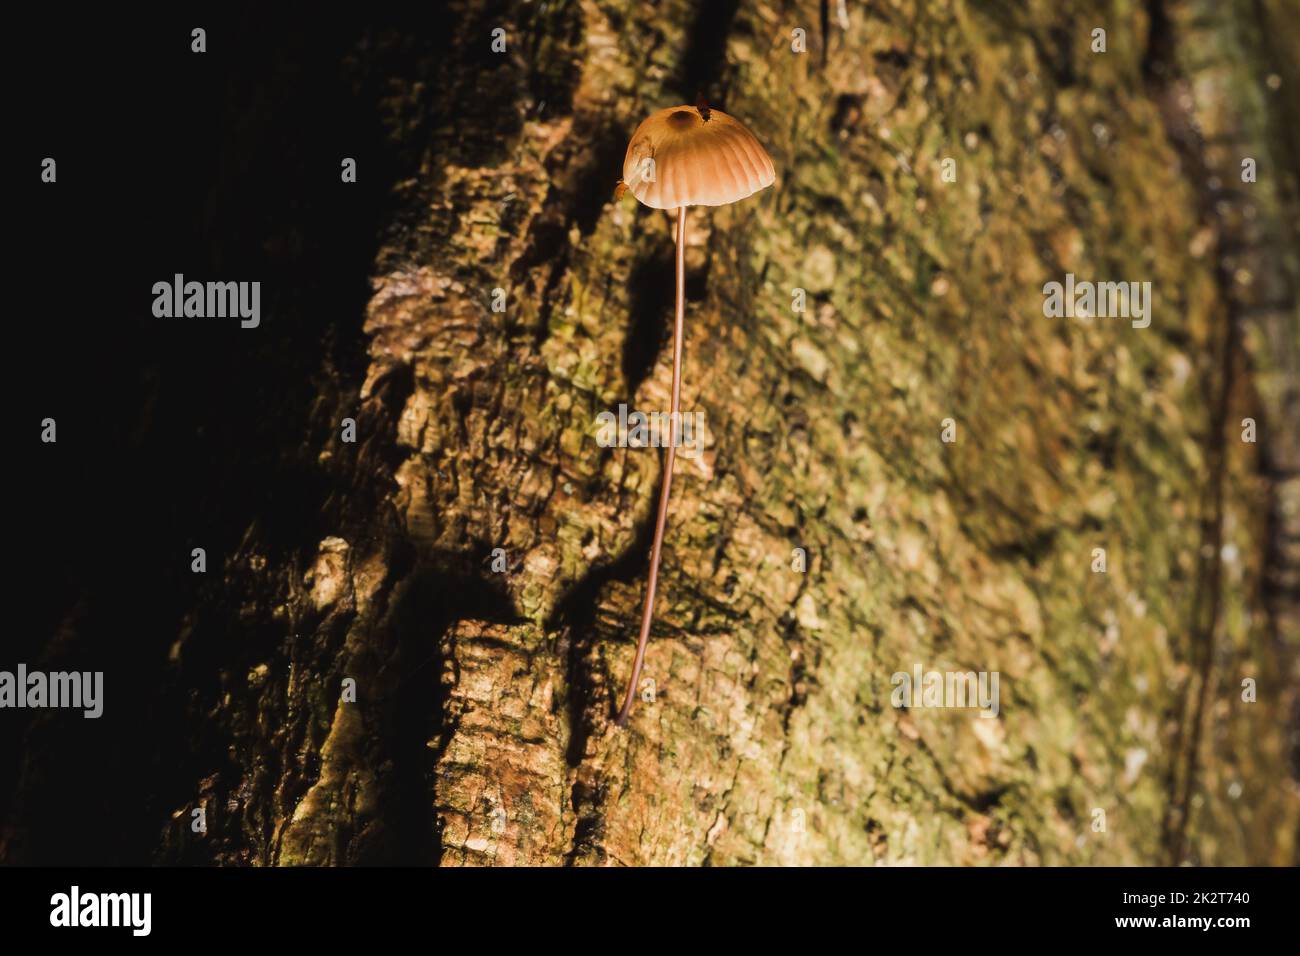 Piccoli funghi marroni sulla corteccia del gambo Foto Stock